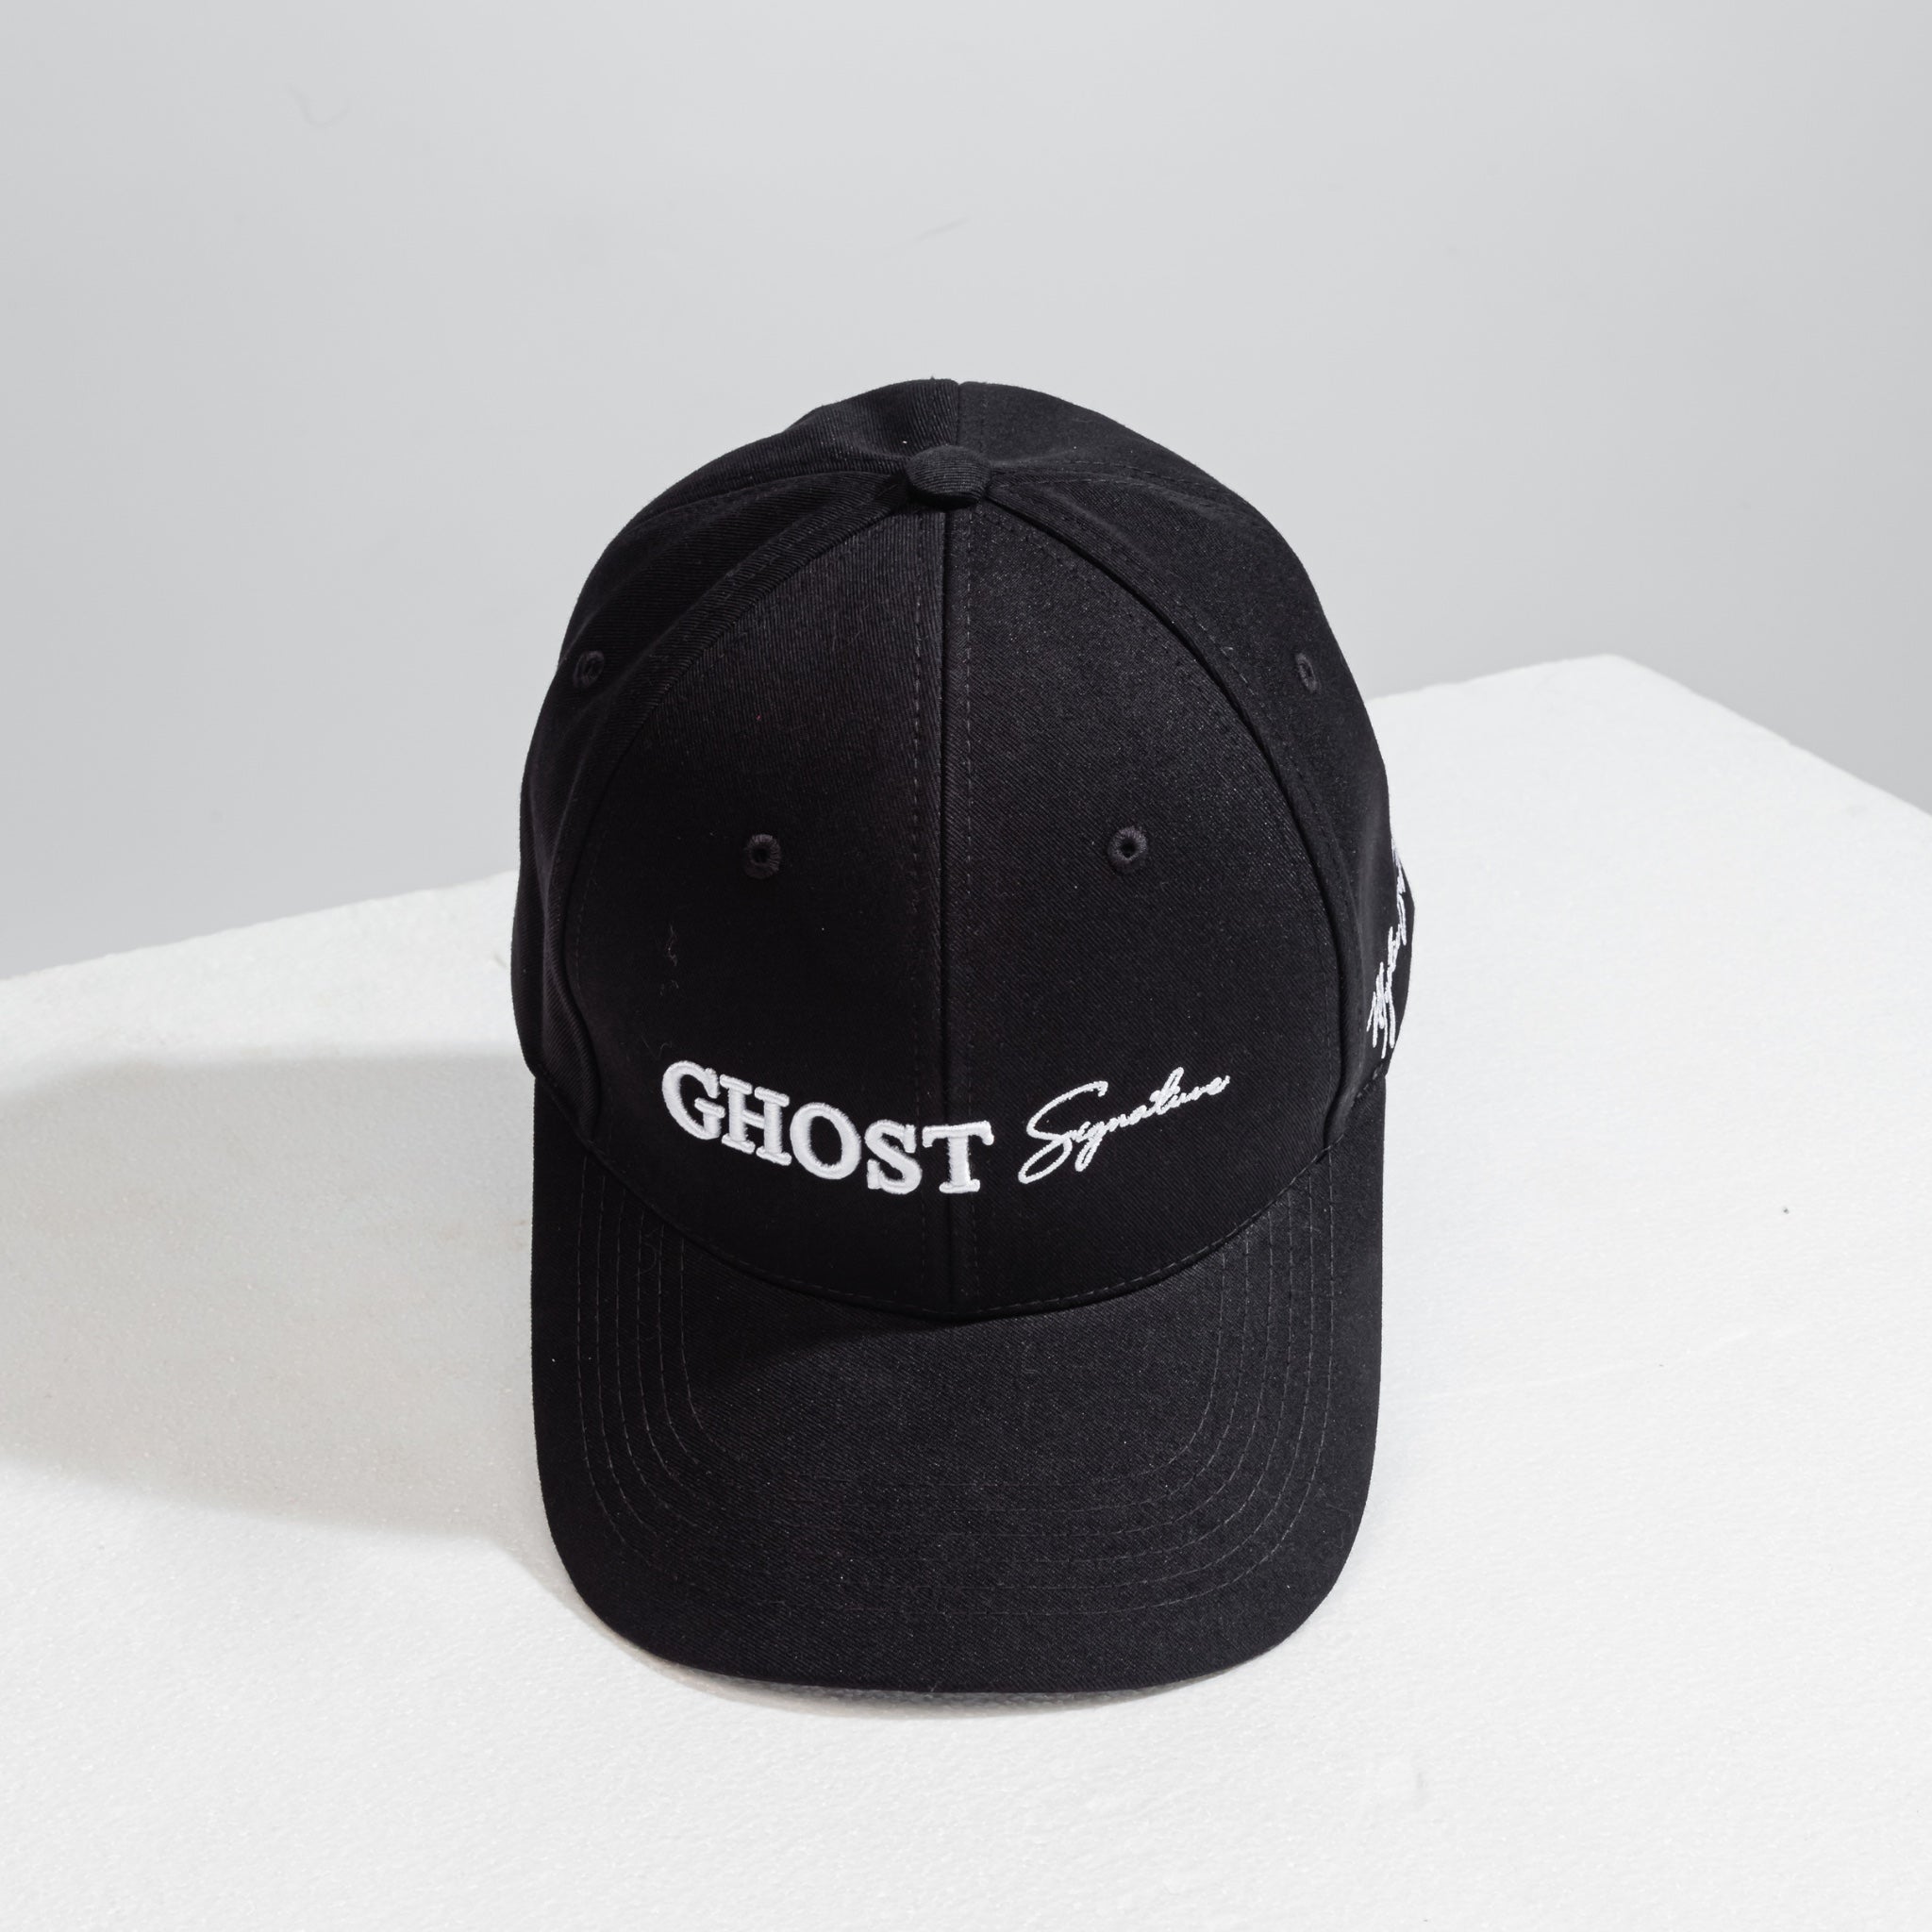 Ghost Signature Black Cap | Ghost Signature Cap | Mystic Se7en